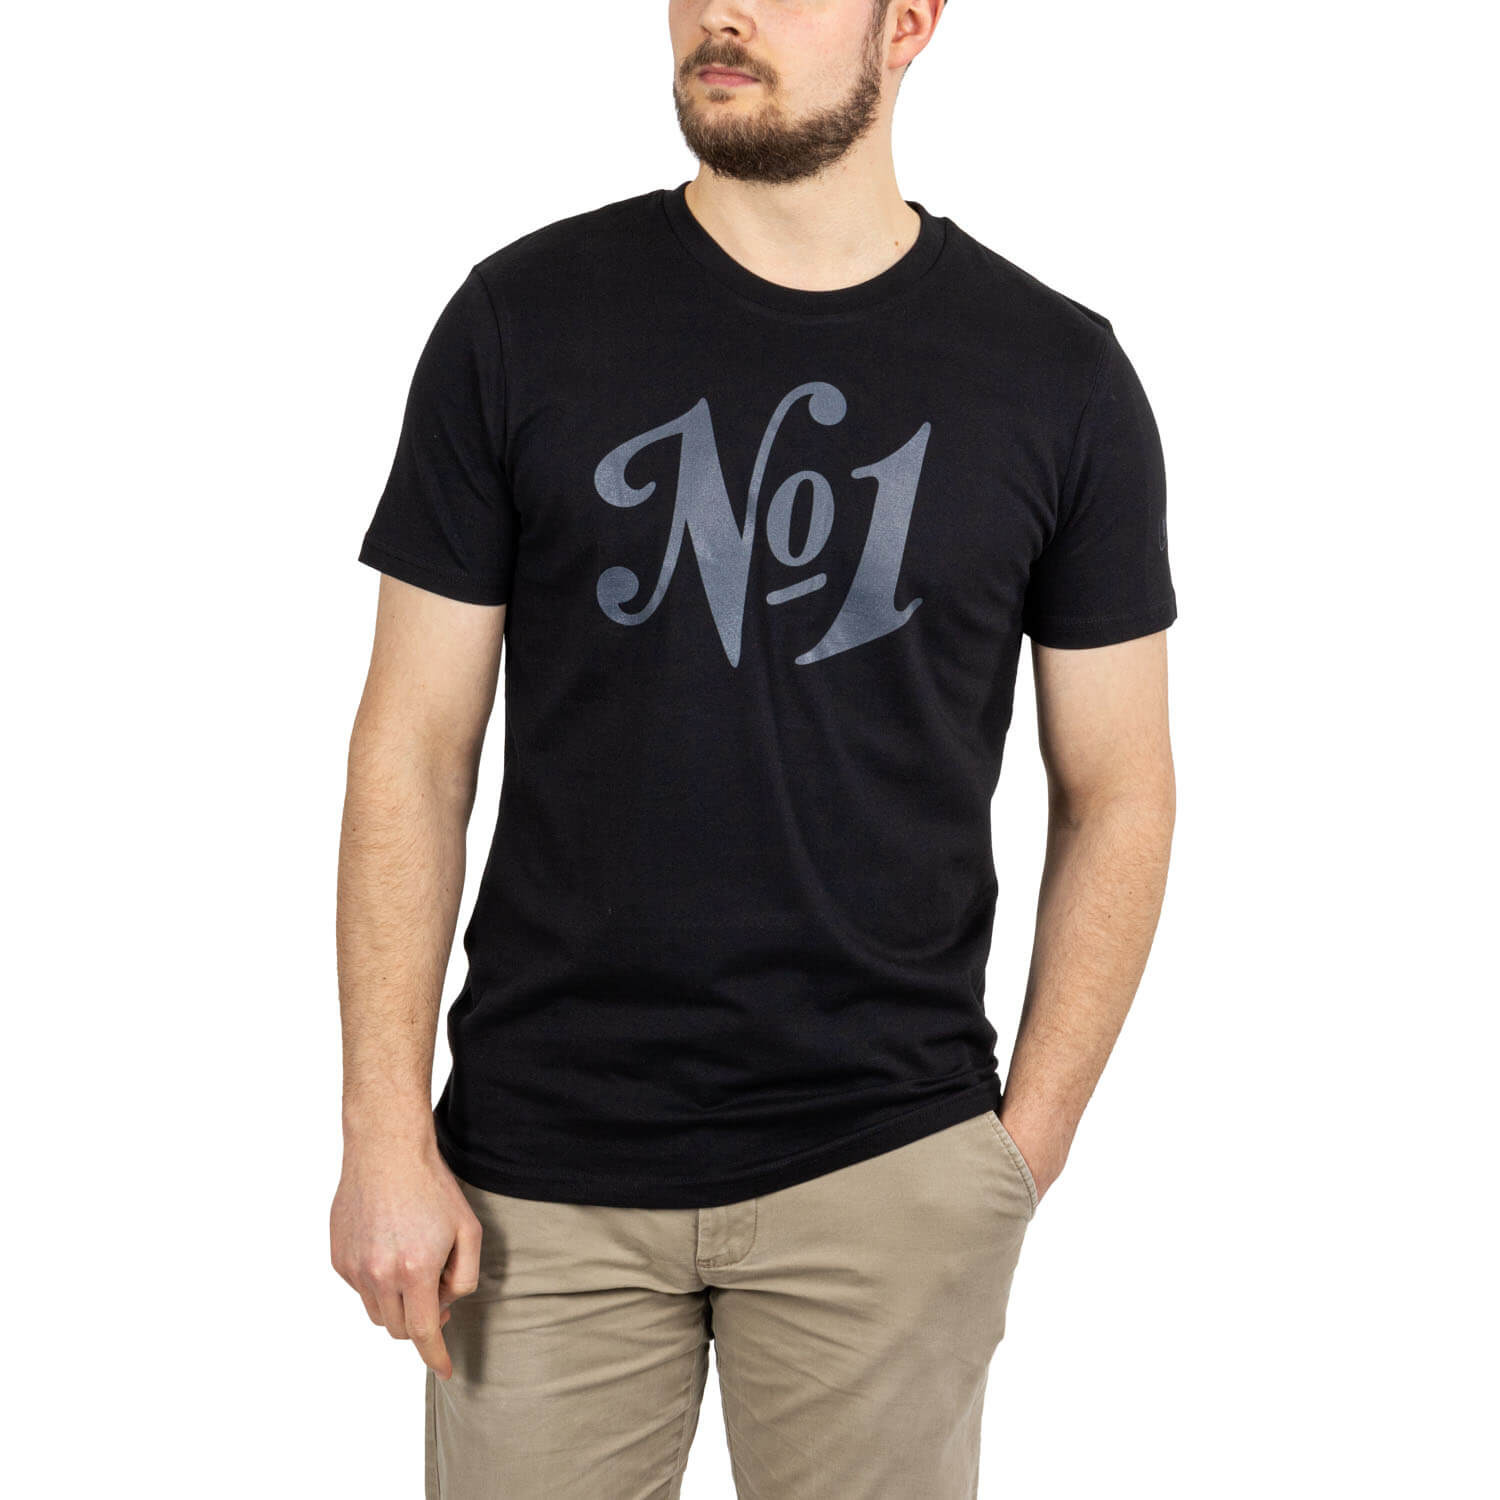 Brinkhoff's T-Shirt "No1"